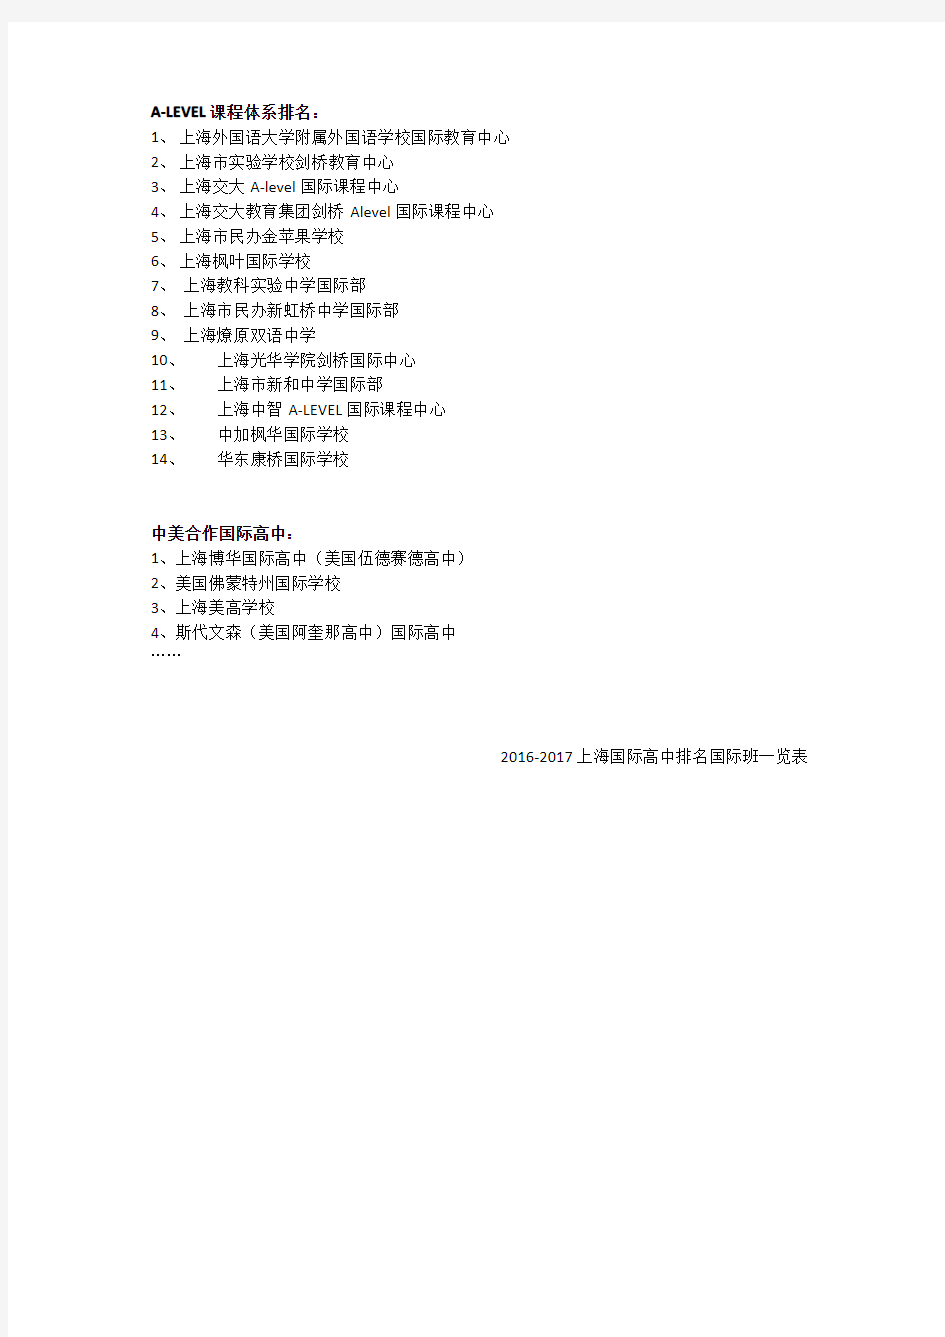 2016-2017年上海国际高中排名国际班一览表(包括民办和公办国际高中国际班)